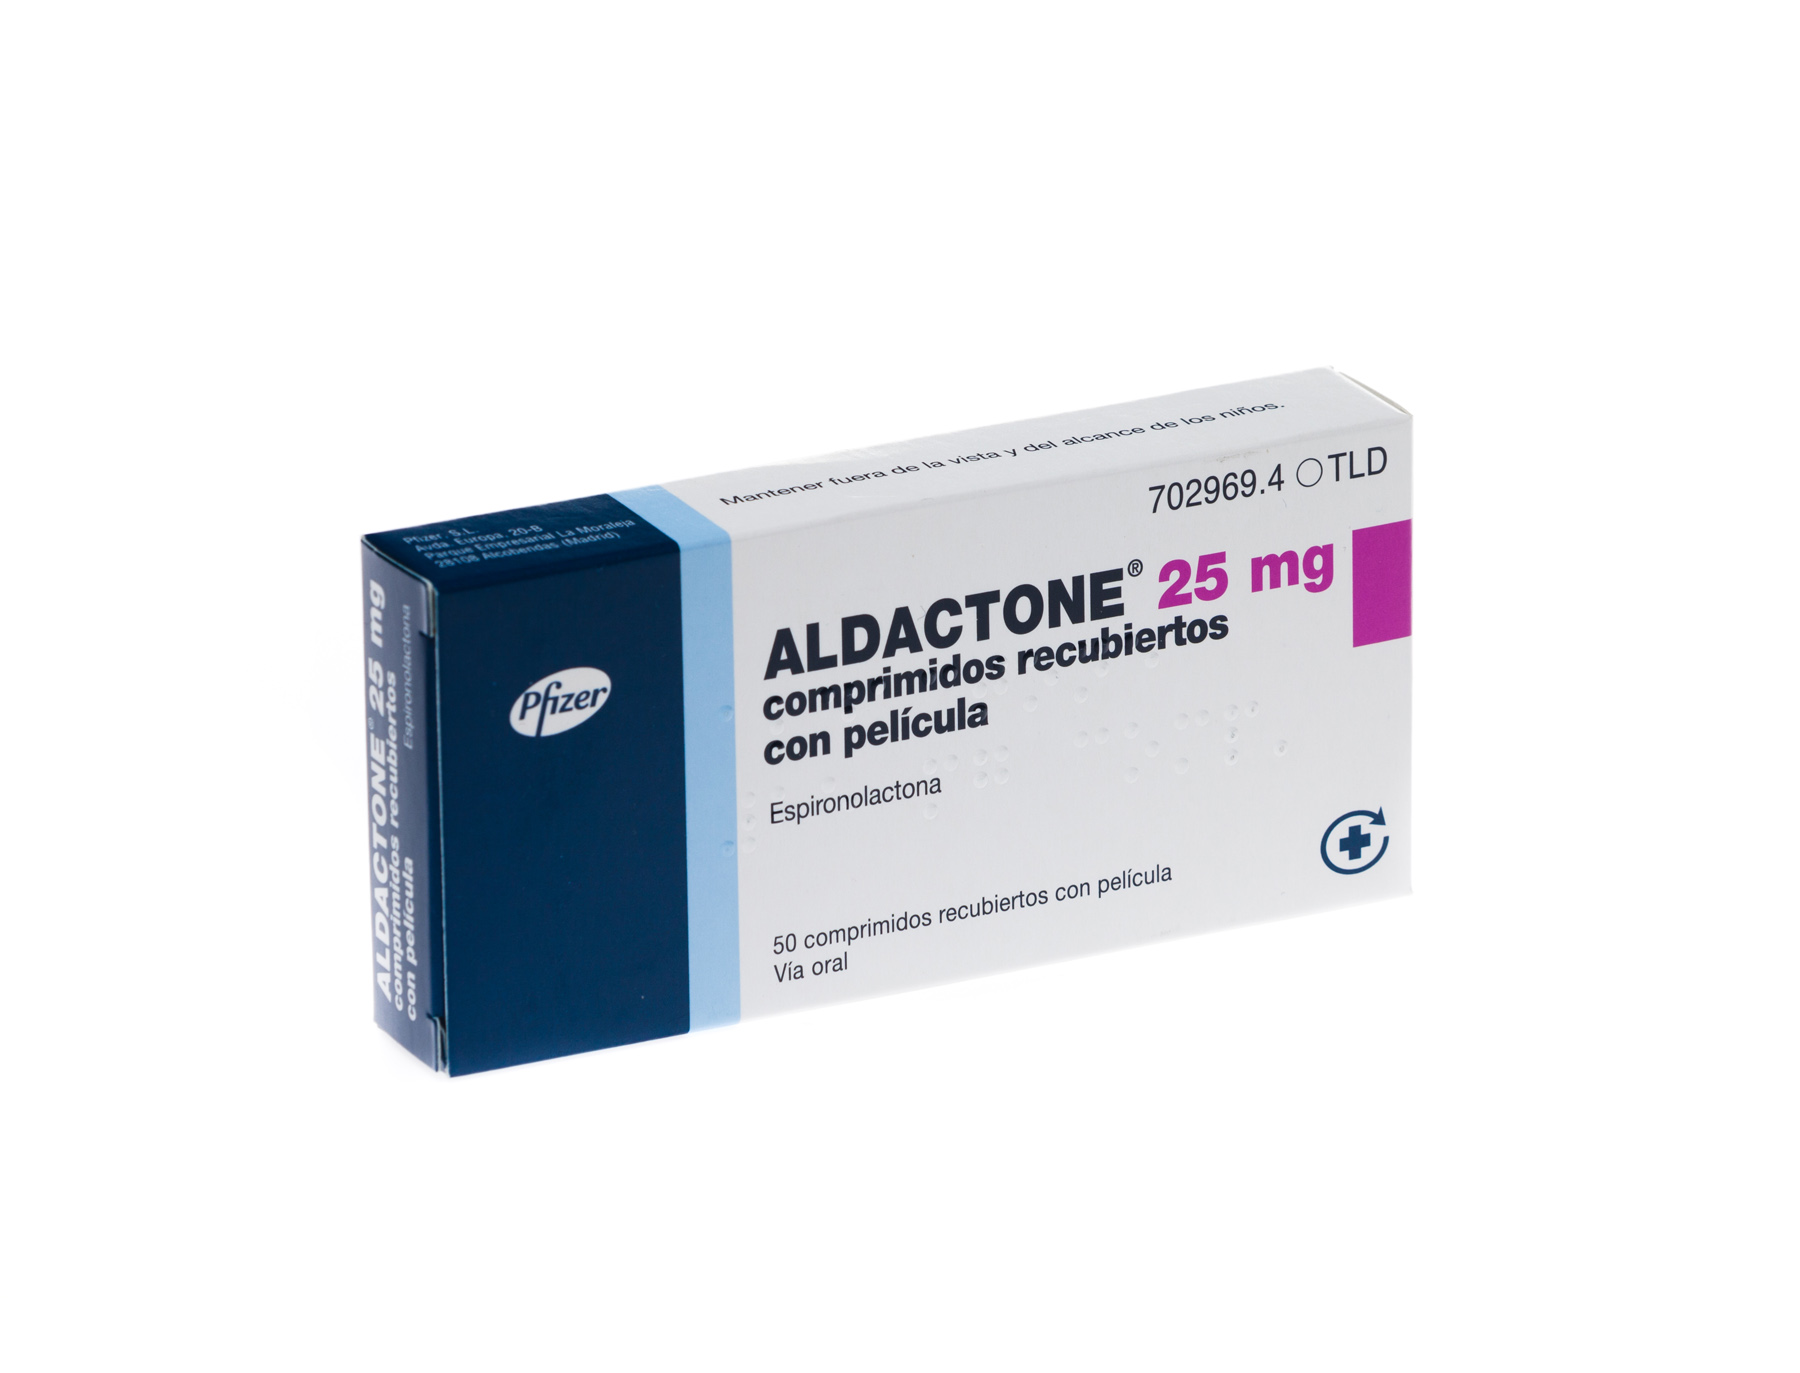 ALDACTONE 25 mg 50 COMPRIMIDOS RECUBIERTOS